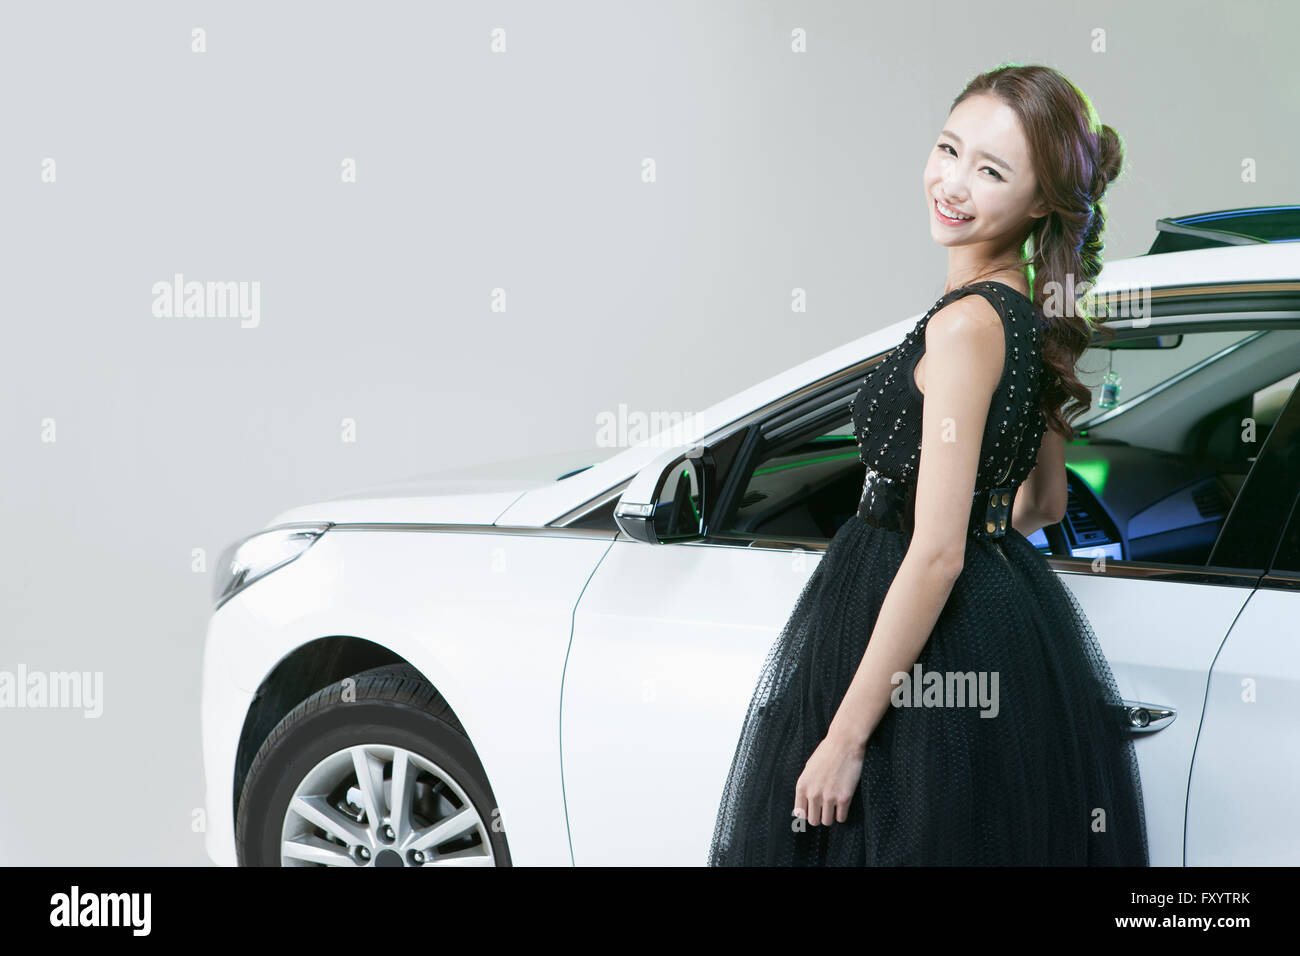 Seitenansicht der junge lächelnde Frau im Kleid gegen ein Auto starrte auf Vorderseite Stockfoto